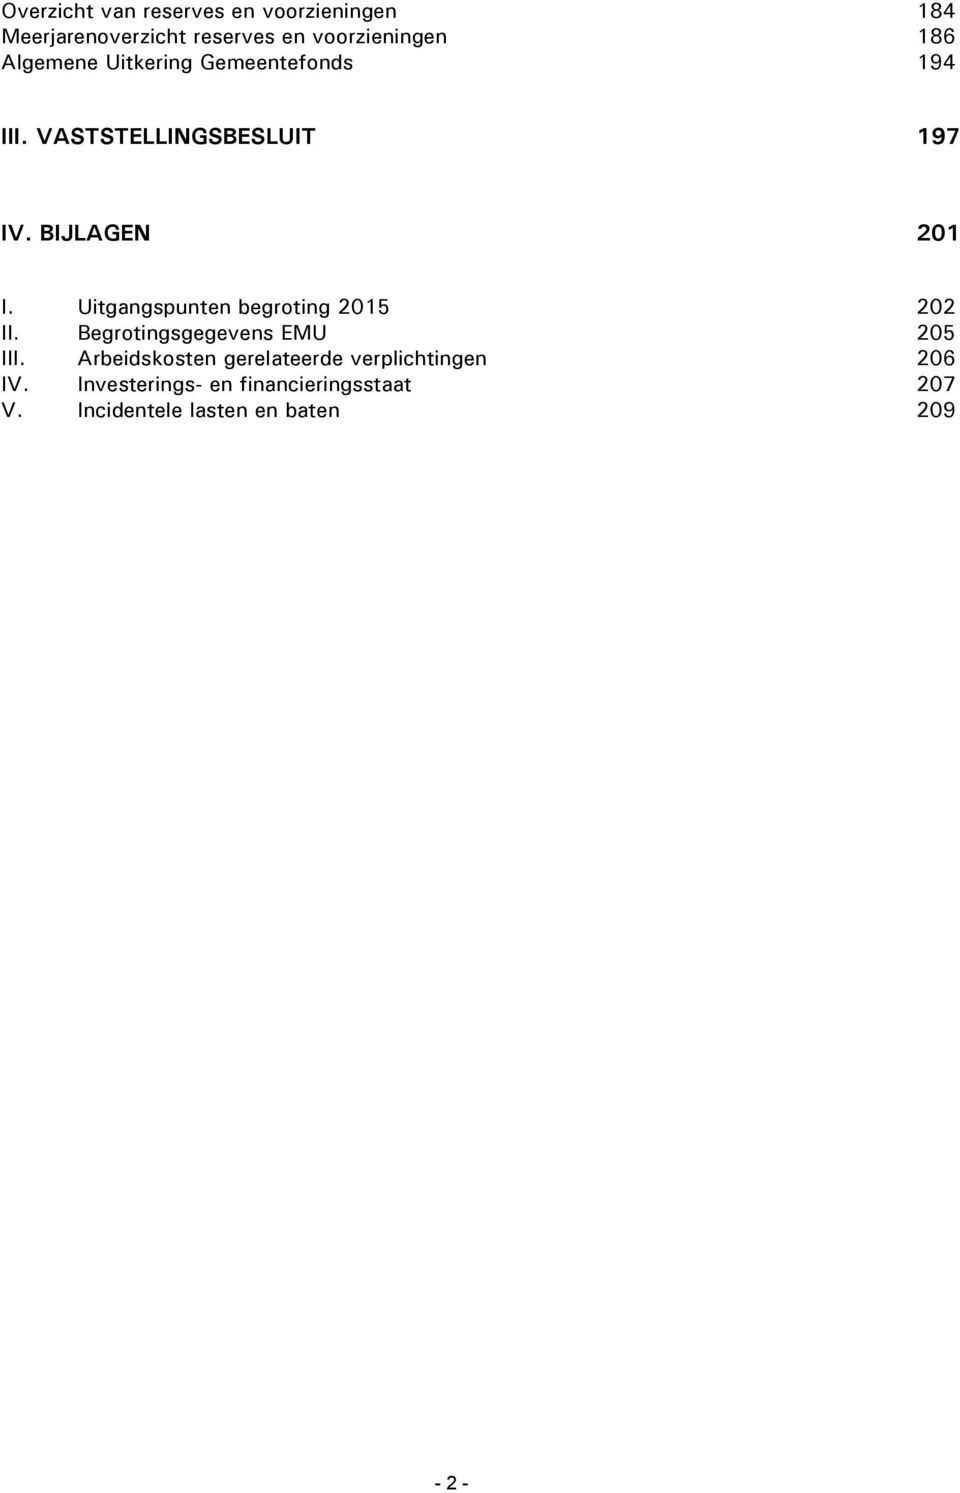 Uitgangspunten begroting 2015 202 II. Begrotingsgegevens EMU 205 III.